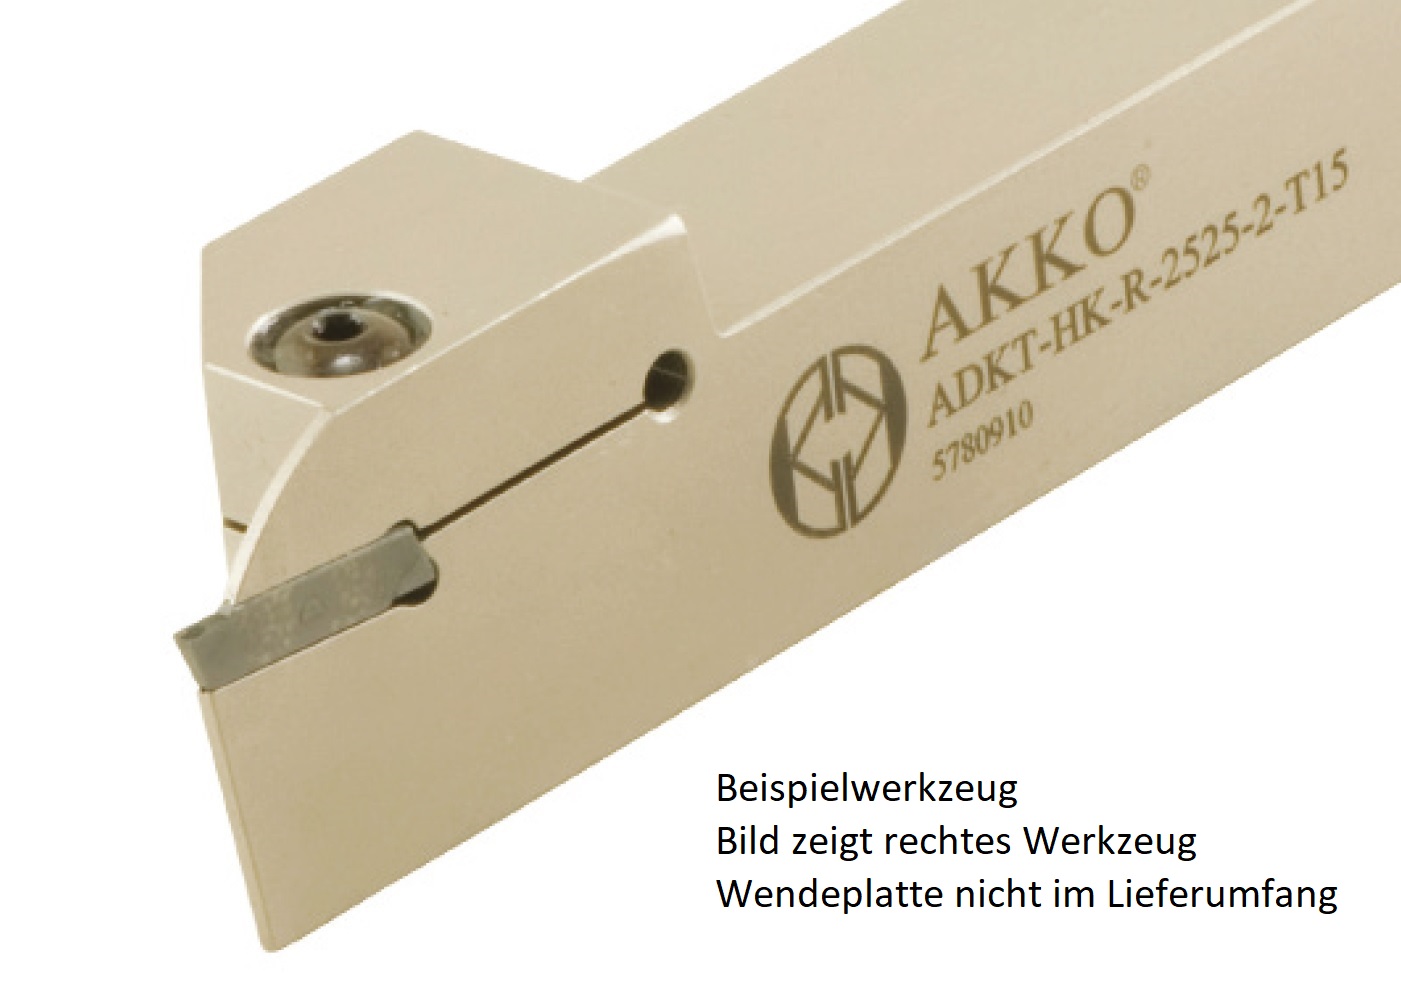 Abstechhalter ADKT-HK-R-1616-2-T15